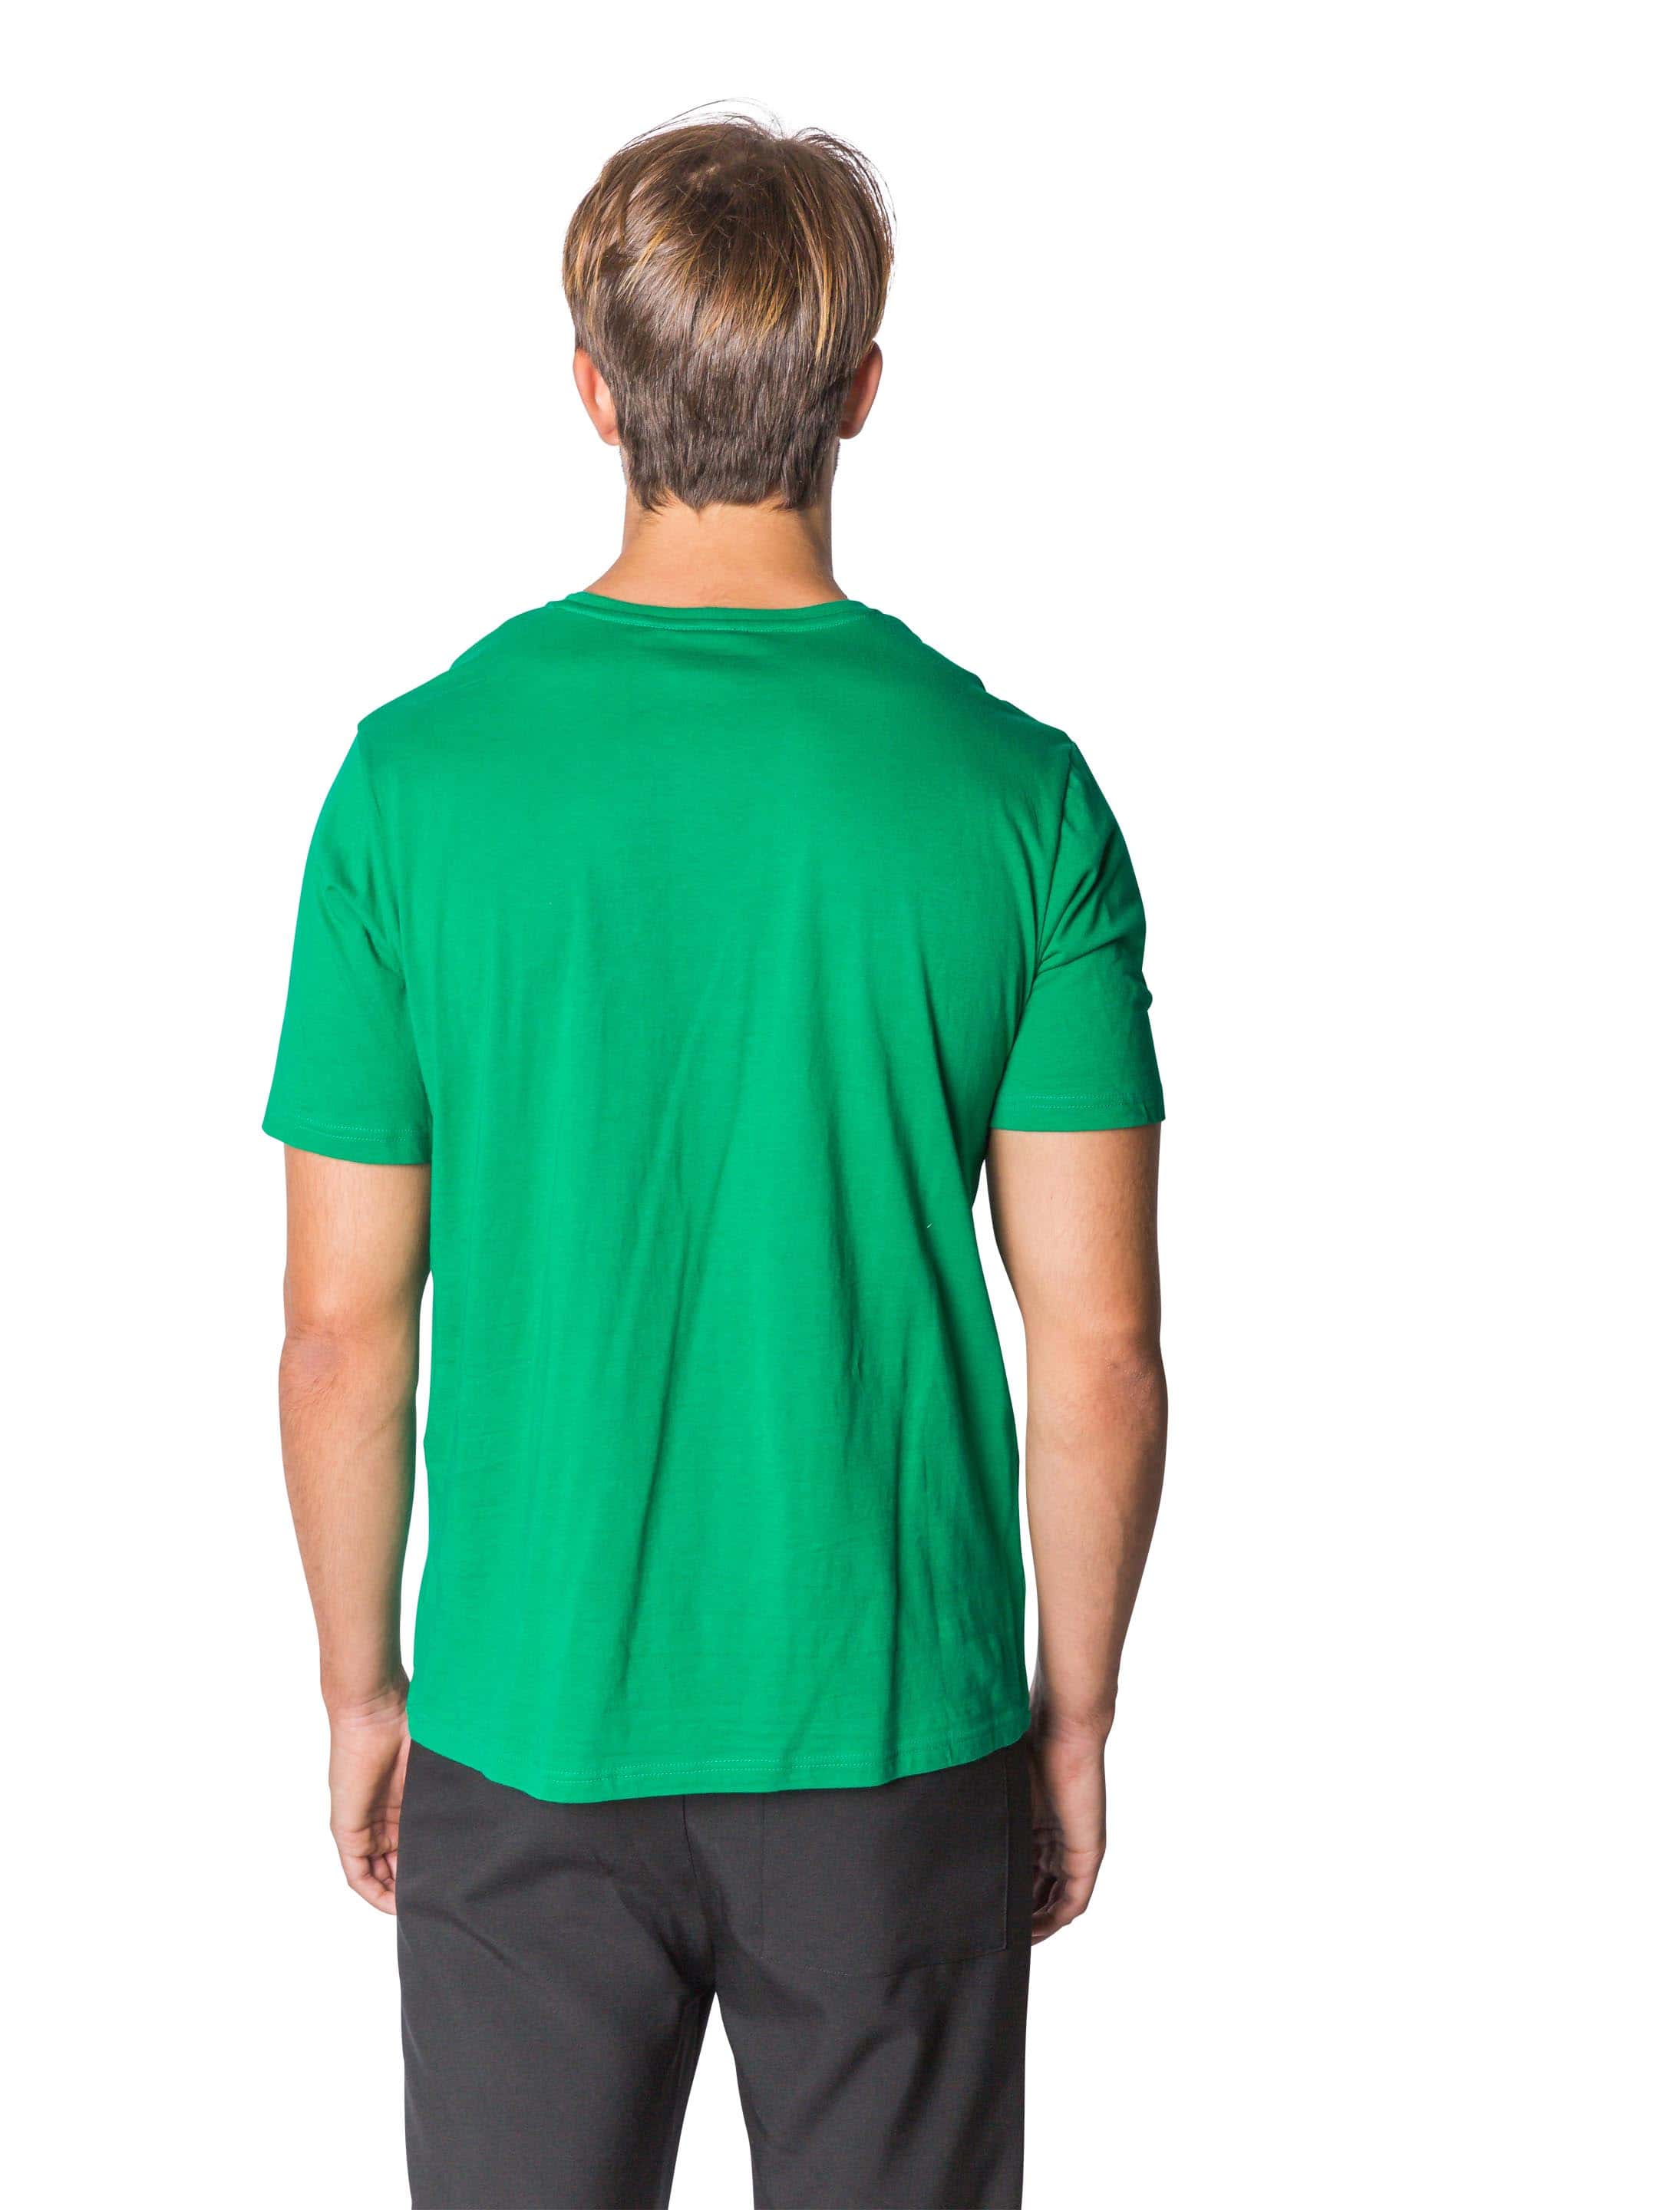 T-Shirt Herren grün S